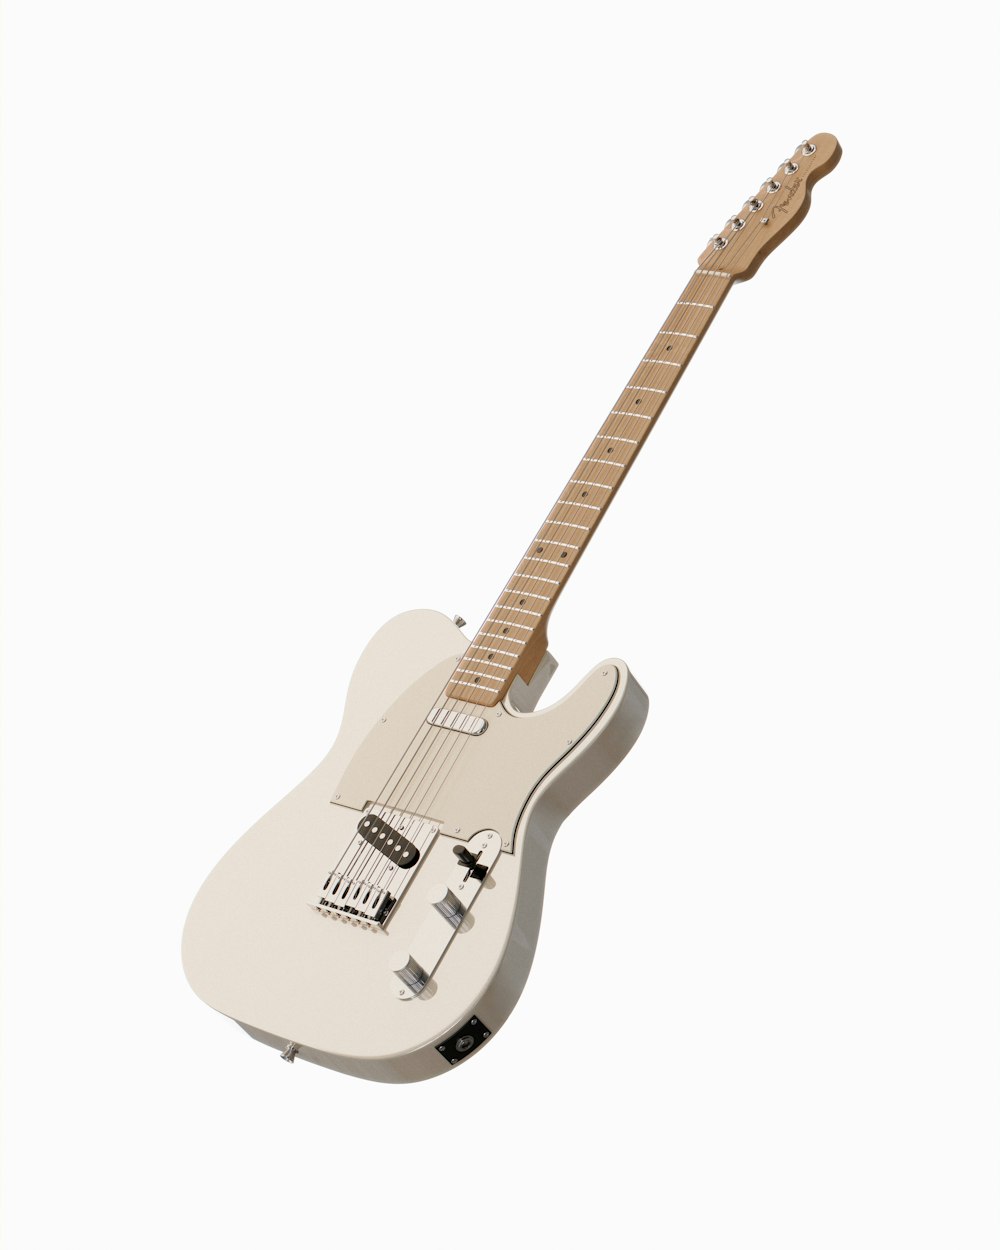 木製のネックを持つ白いエレキギター